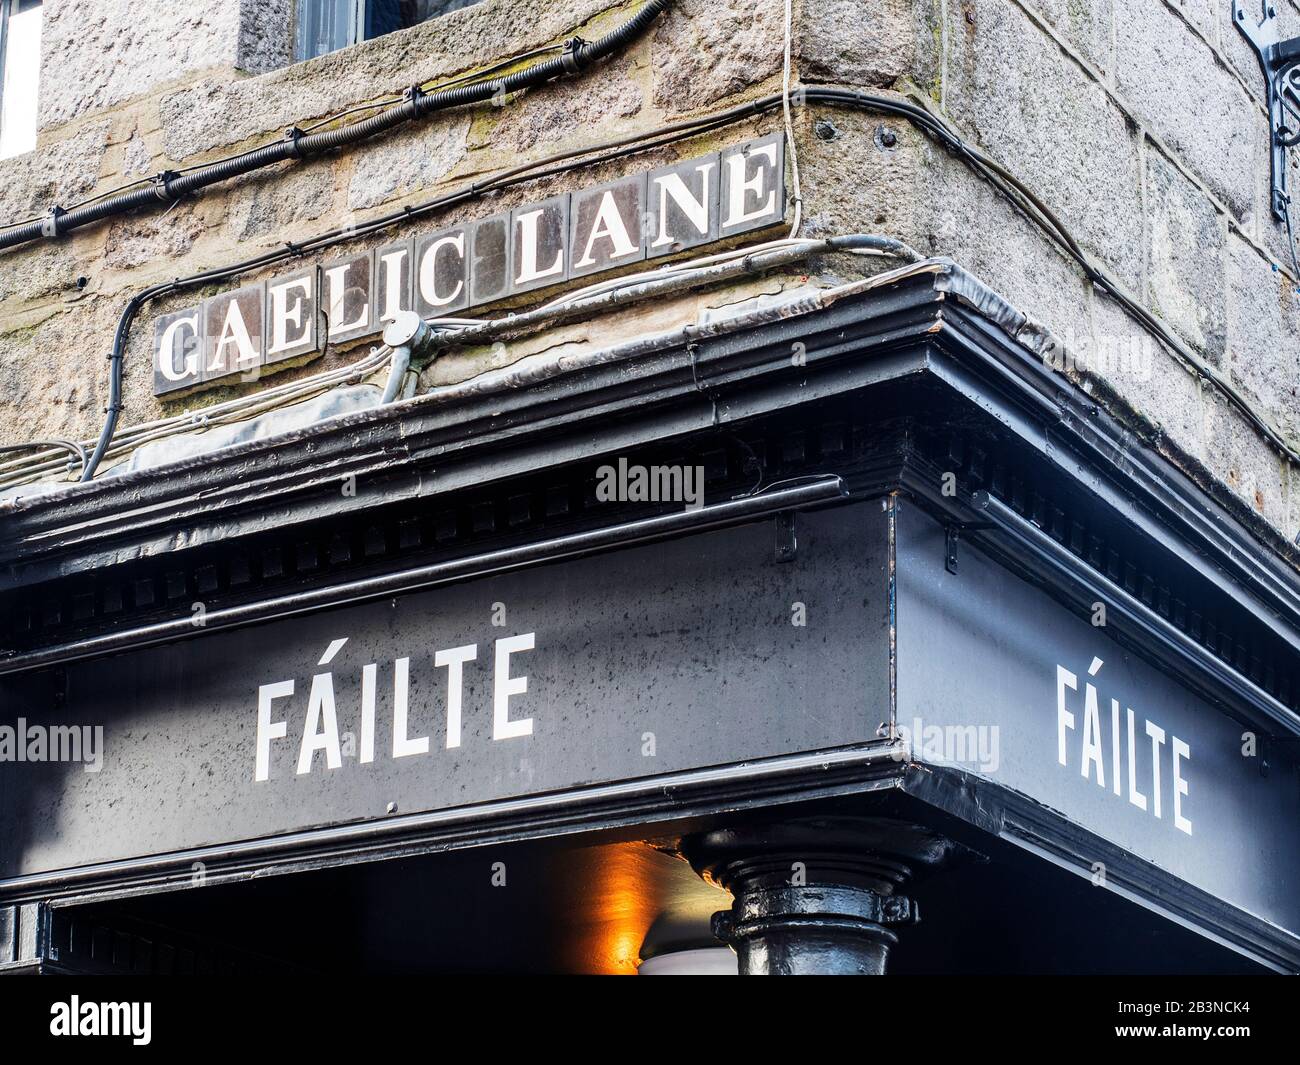 Gaelic Lane nome di strada sopra un ingresso pub con accoglienza Failte in irlandese ad Aberdeen Scozia Foto Stock